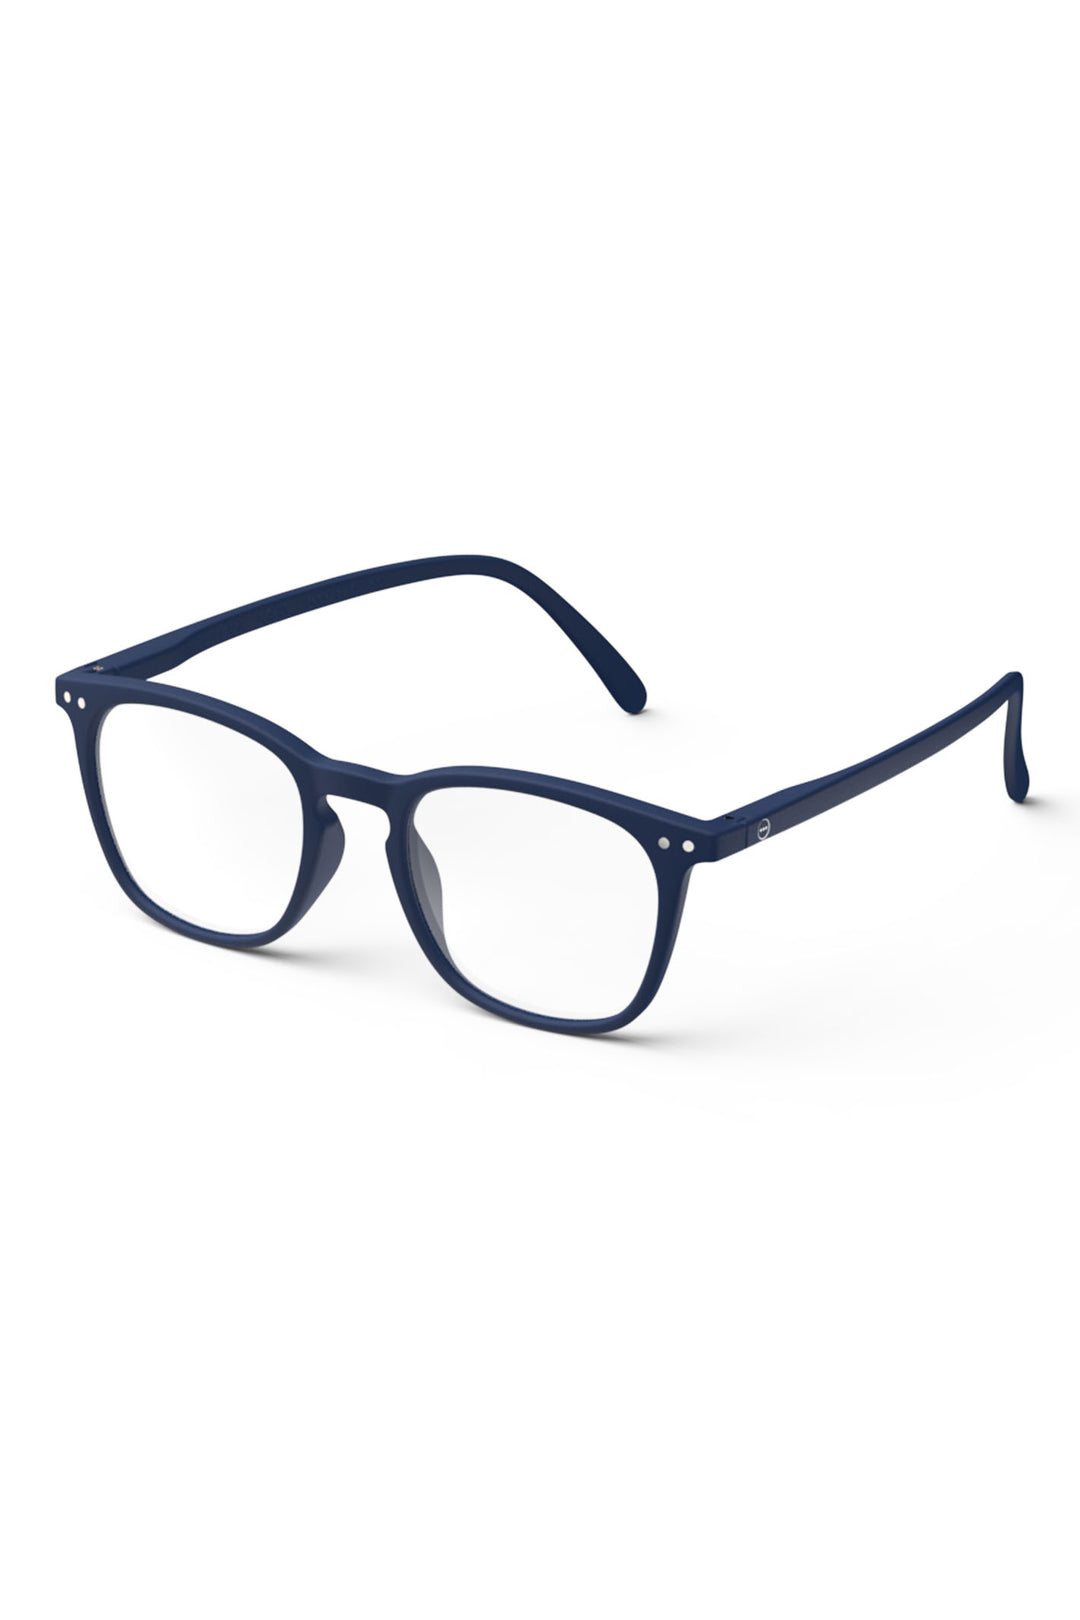 Izipizi Paris LMSEC03 Navy Blue Reading Glasses - Olivia Grace Fashion